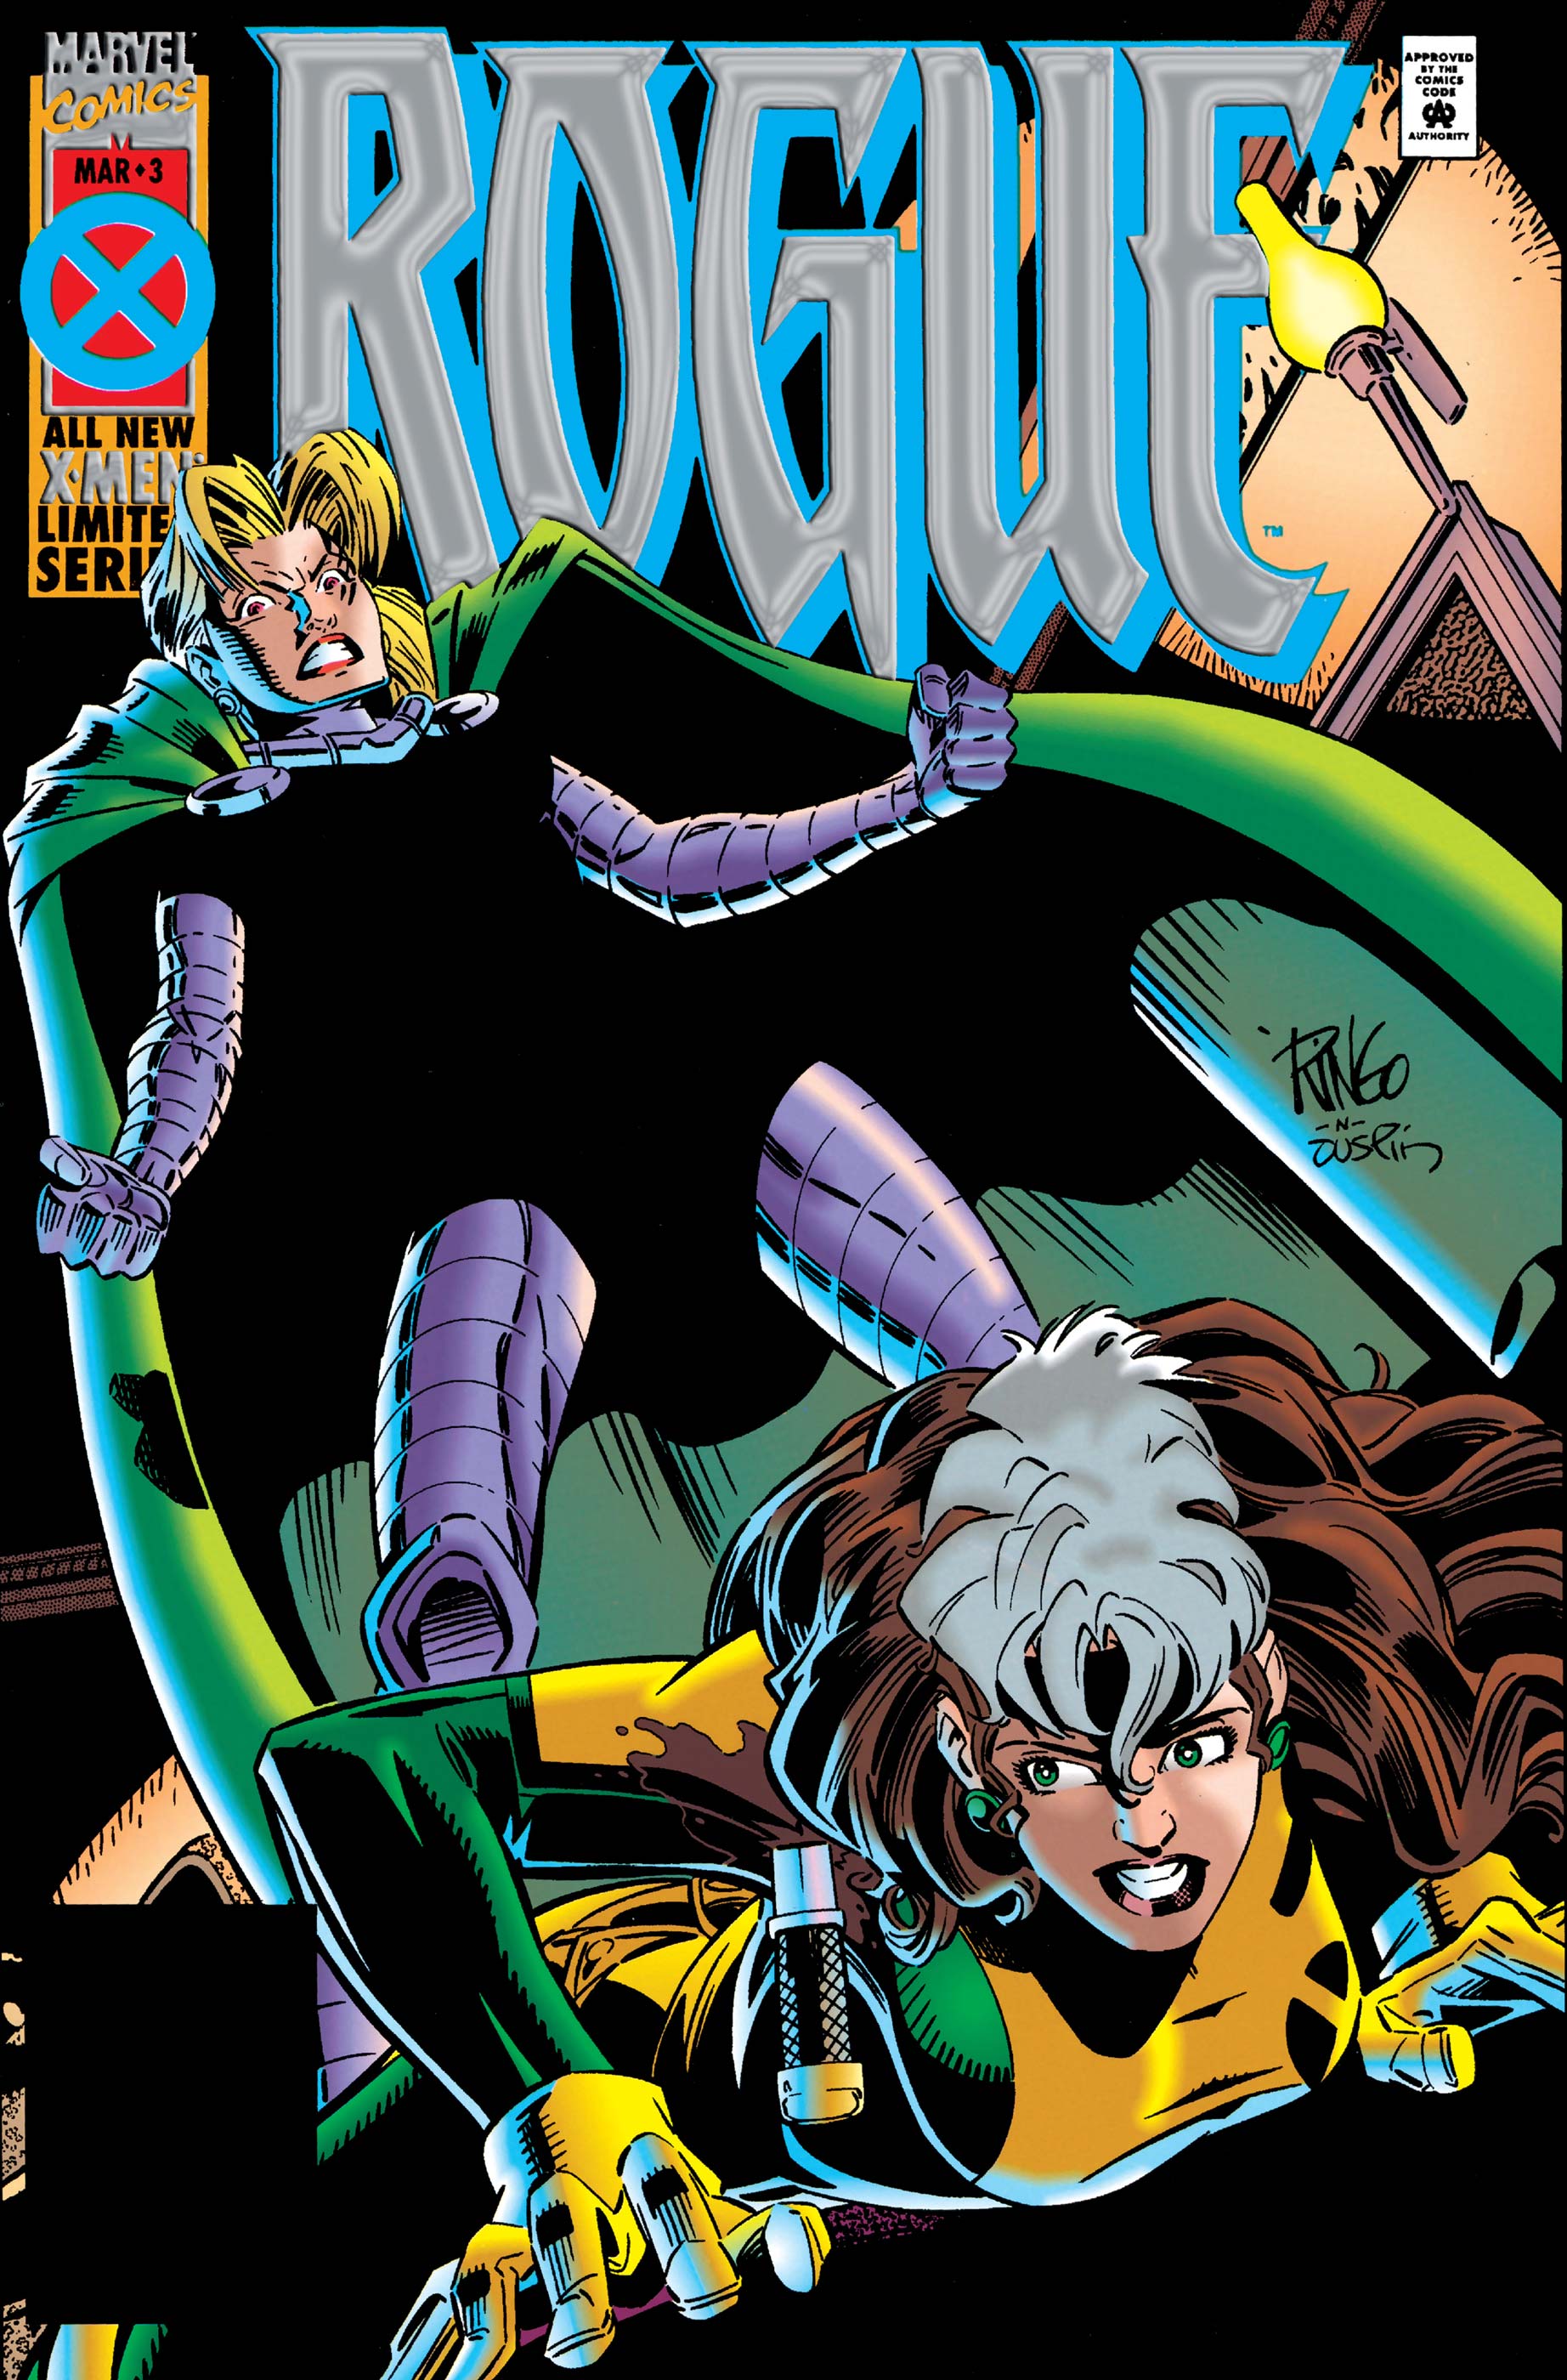 Rogue (1995) #3